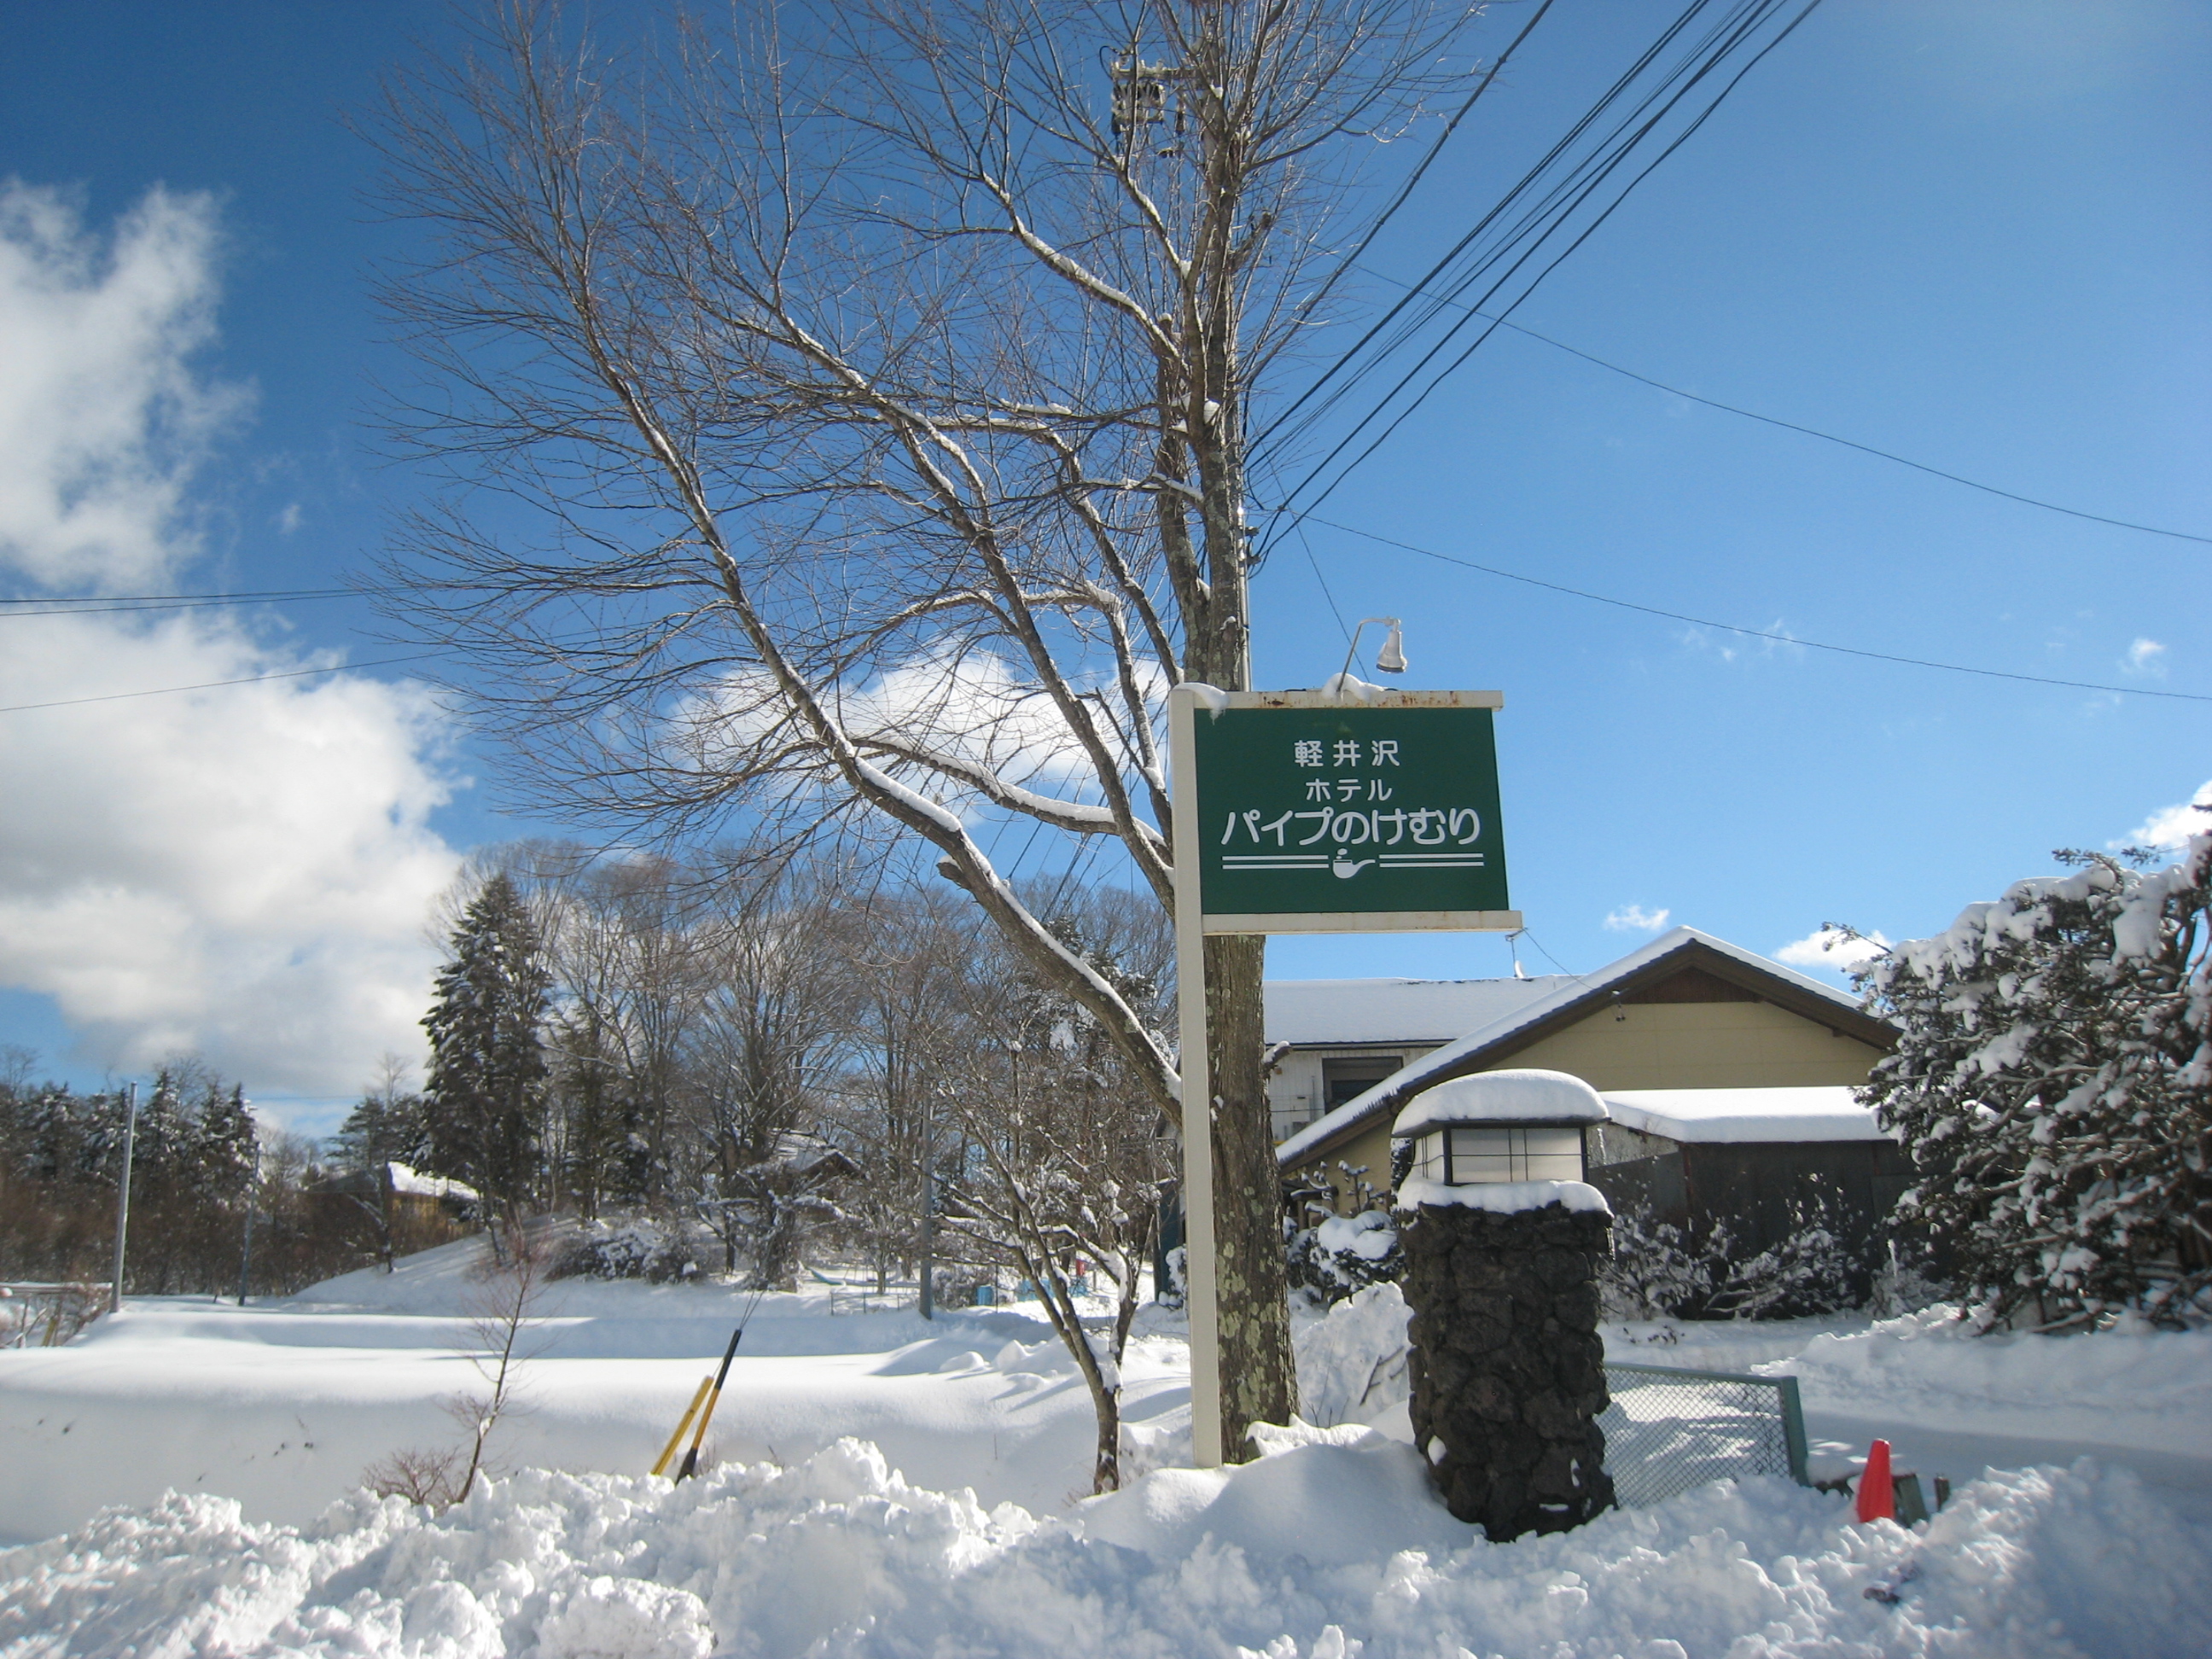 軽井沢より 雪が積もりました 公式 軽井沢ホテルパイプのけむり